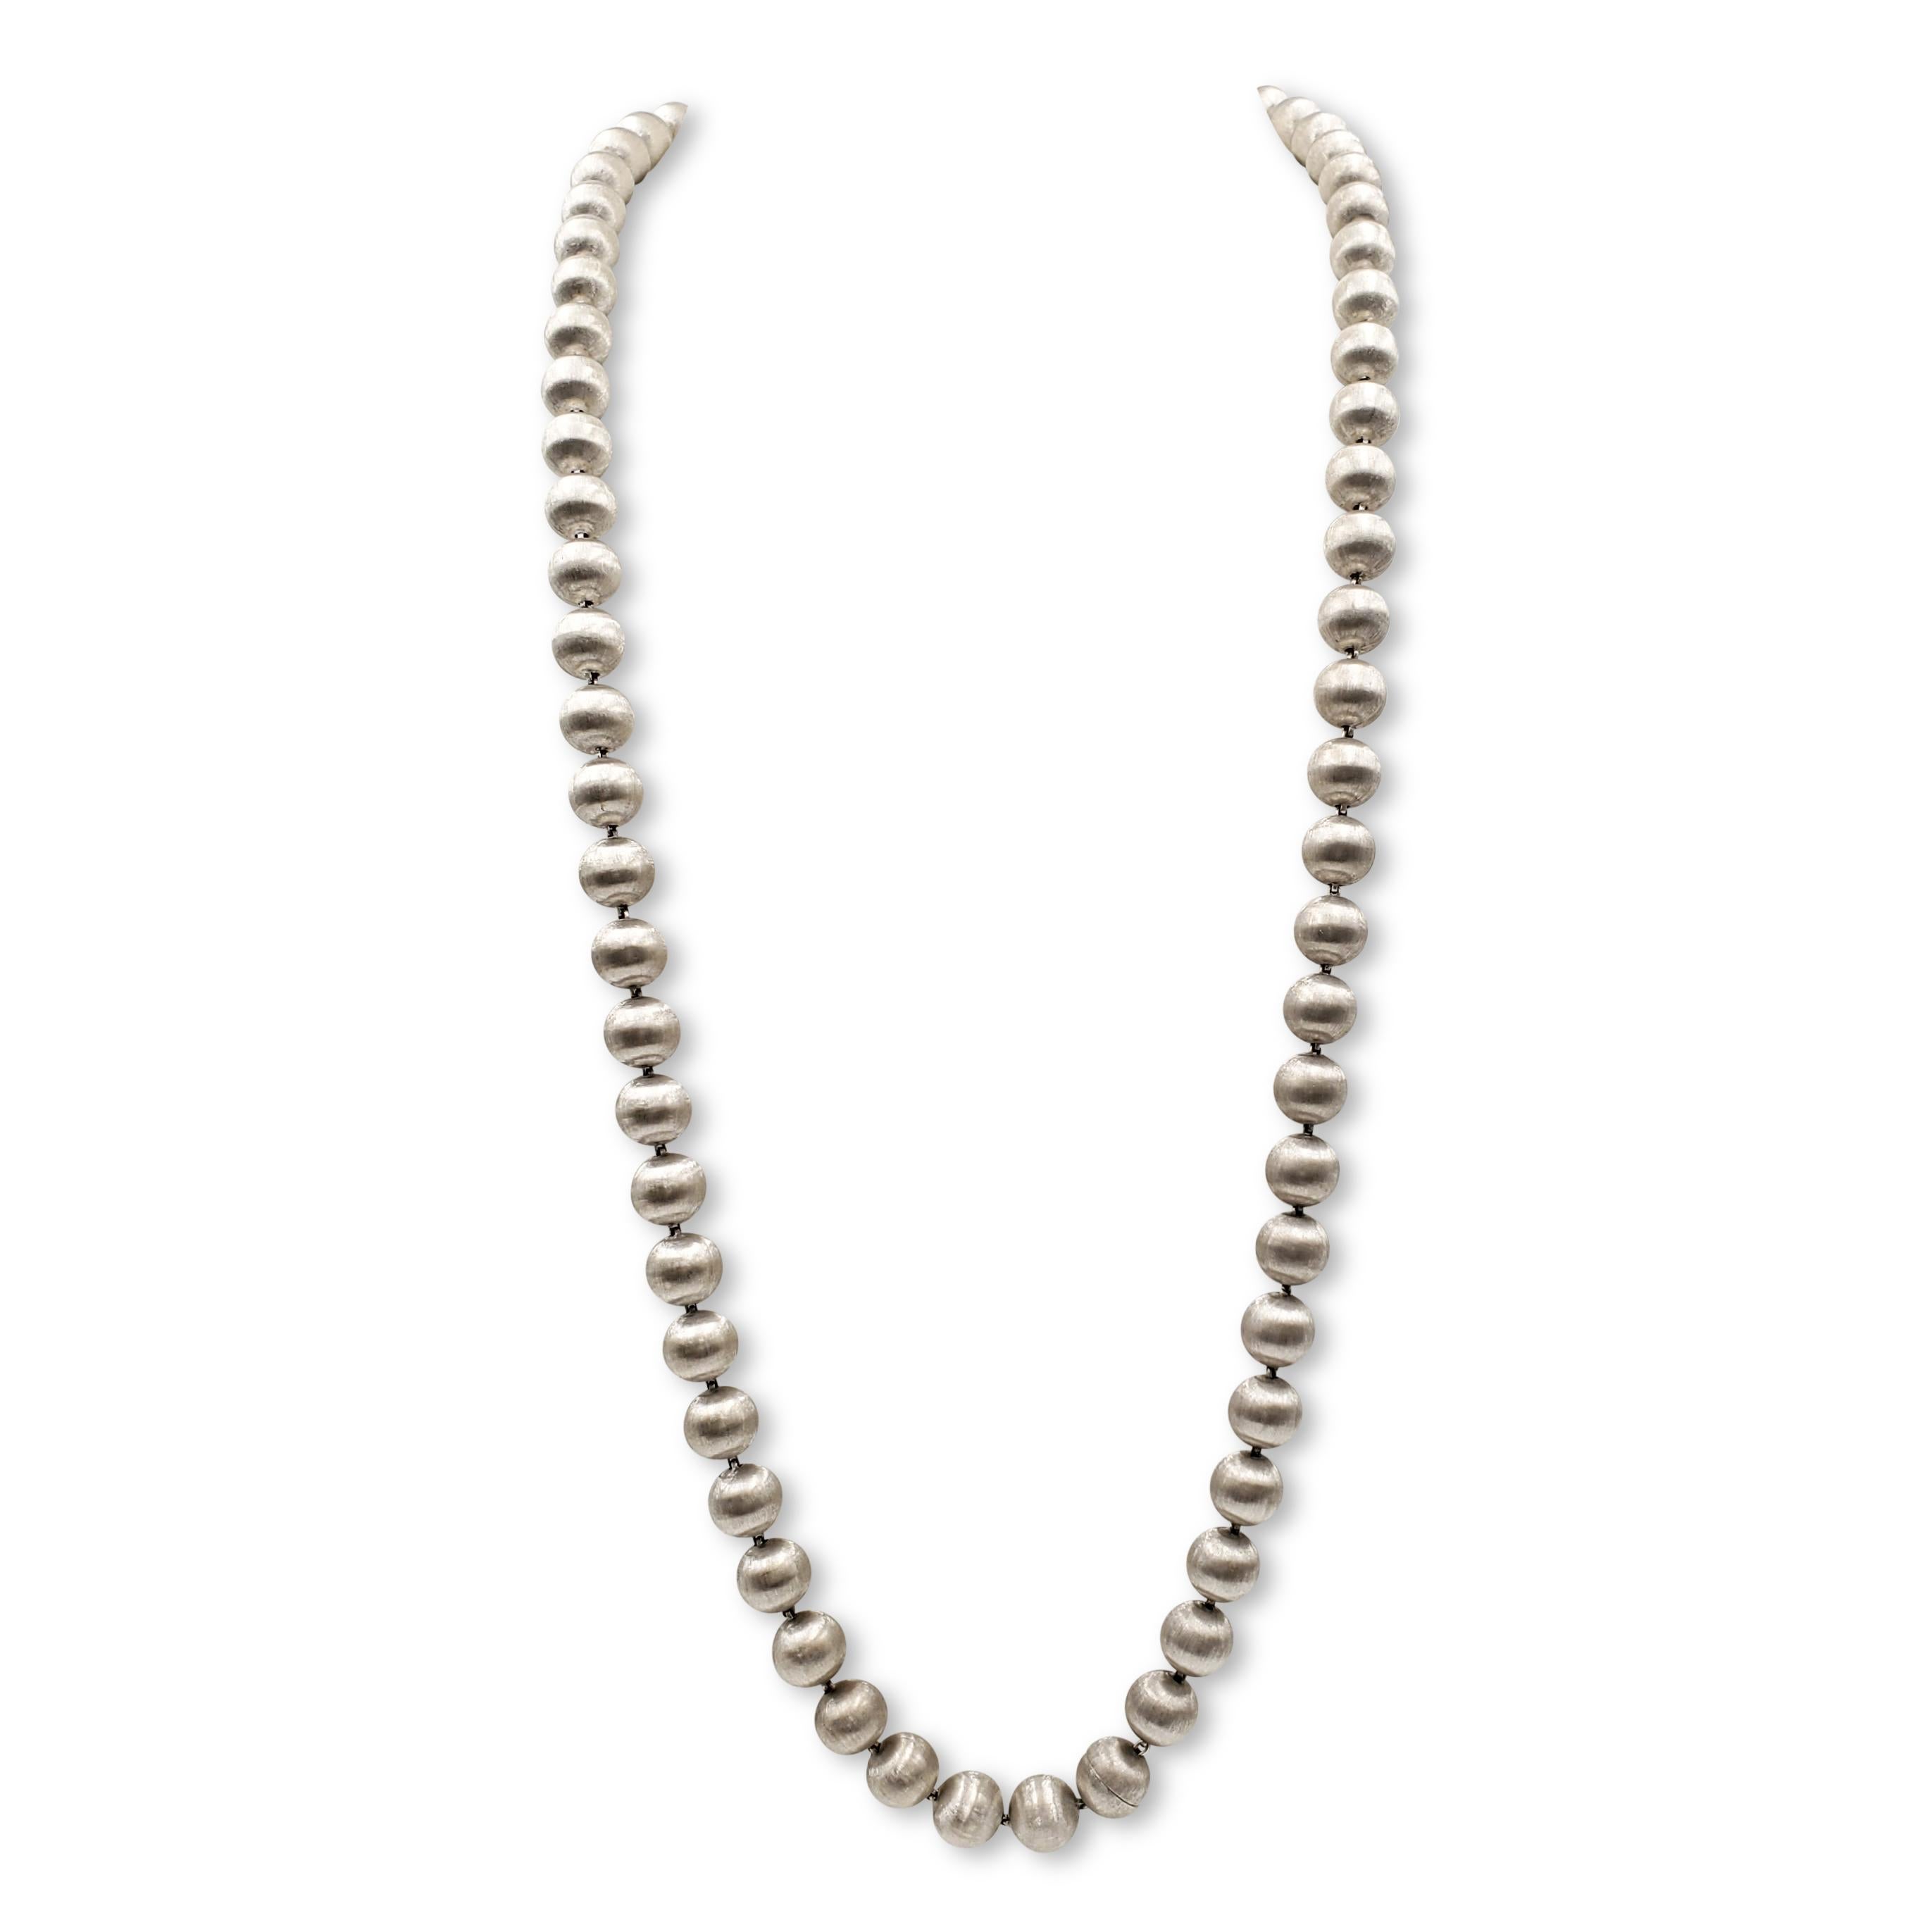 Women's or Men's Buccellati 'Rigato' White Gold Necklace Set